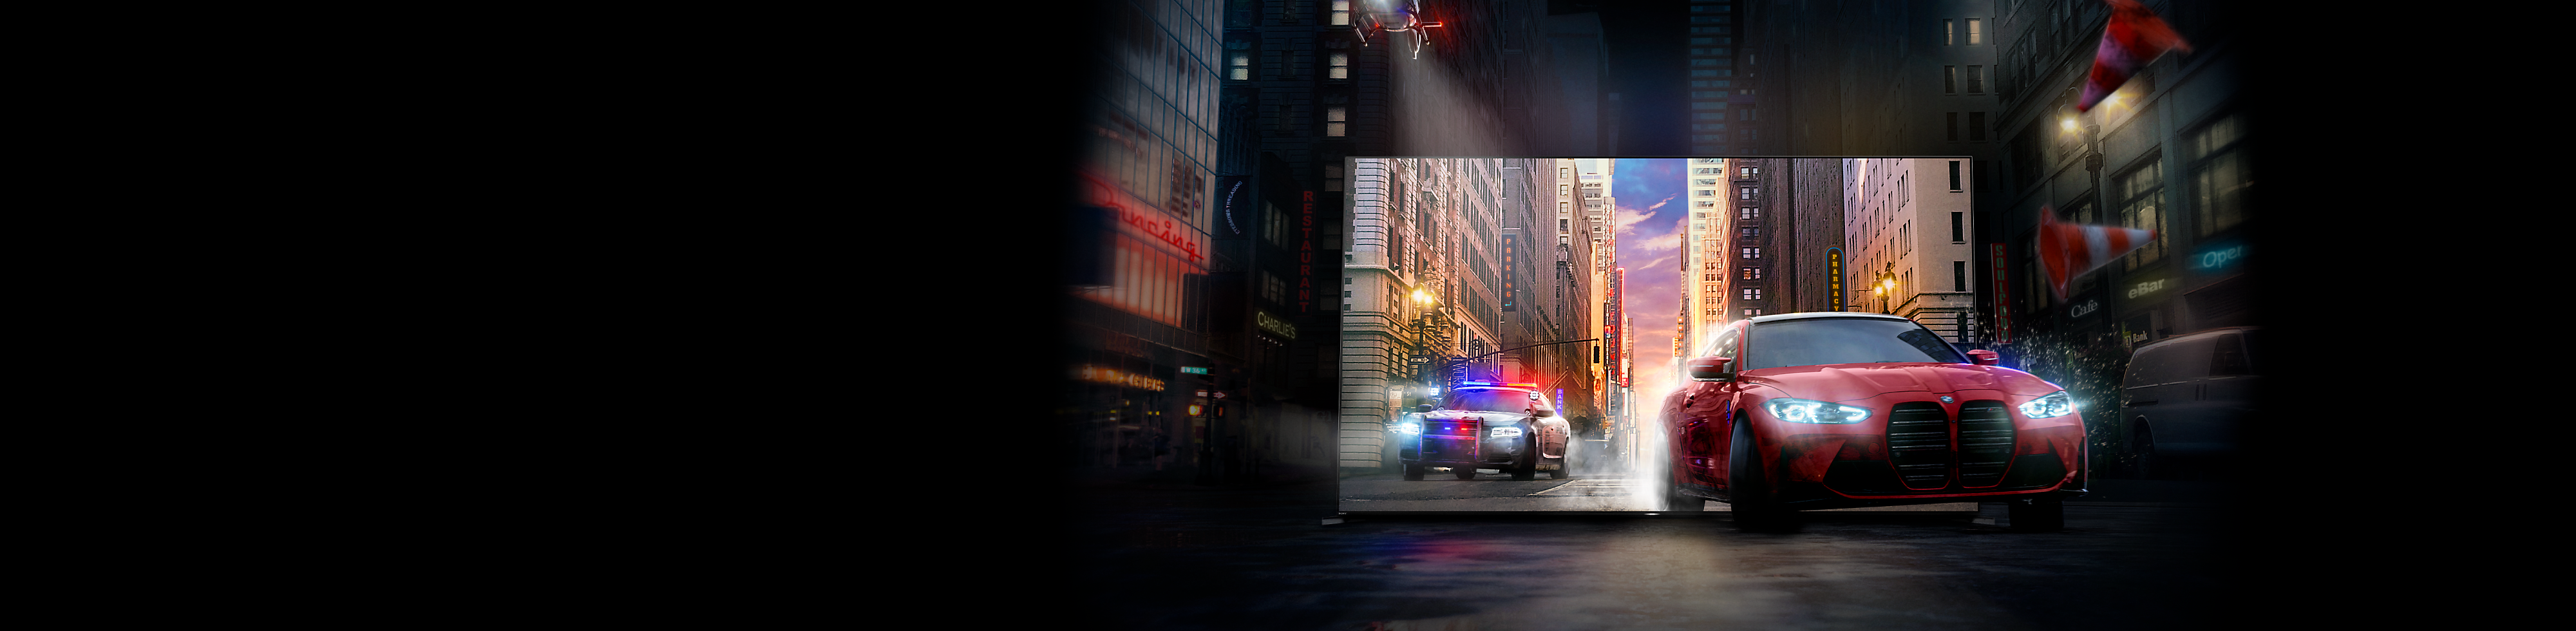 Crveno vozilo za kojim ide policijsko vozilo iskače iz BRAVIA TV ekrana na ulicu